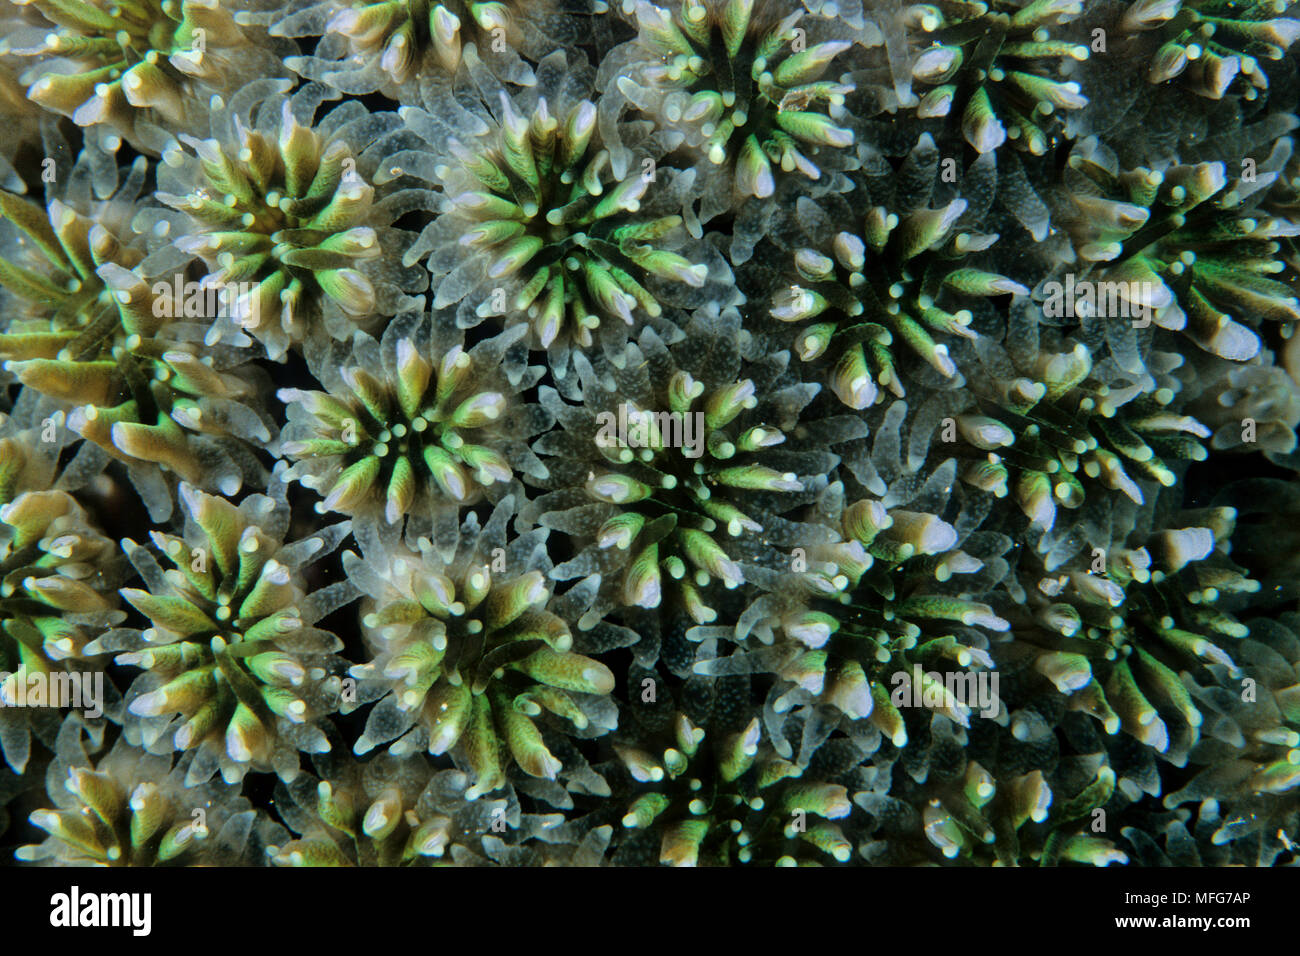 Polipi di corallo a fungo, Galaxa astreata, Aldabra Atoll, patrimonio mondiale naturale, Seychelles, Oceano Indiano Data: 24.06.08 RIF: ZB777 115630 00 Foto Stock